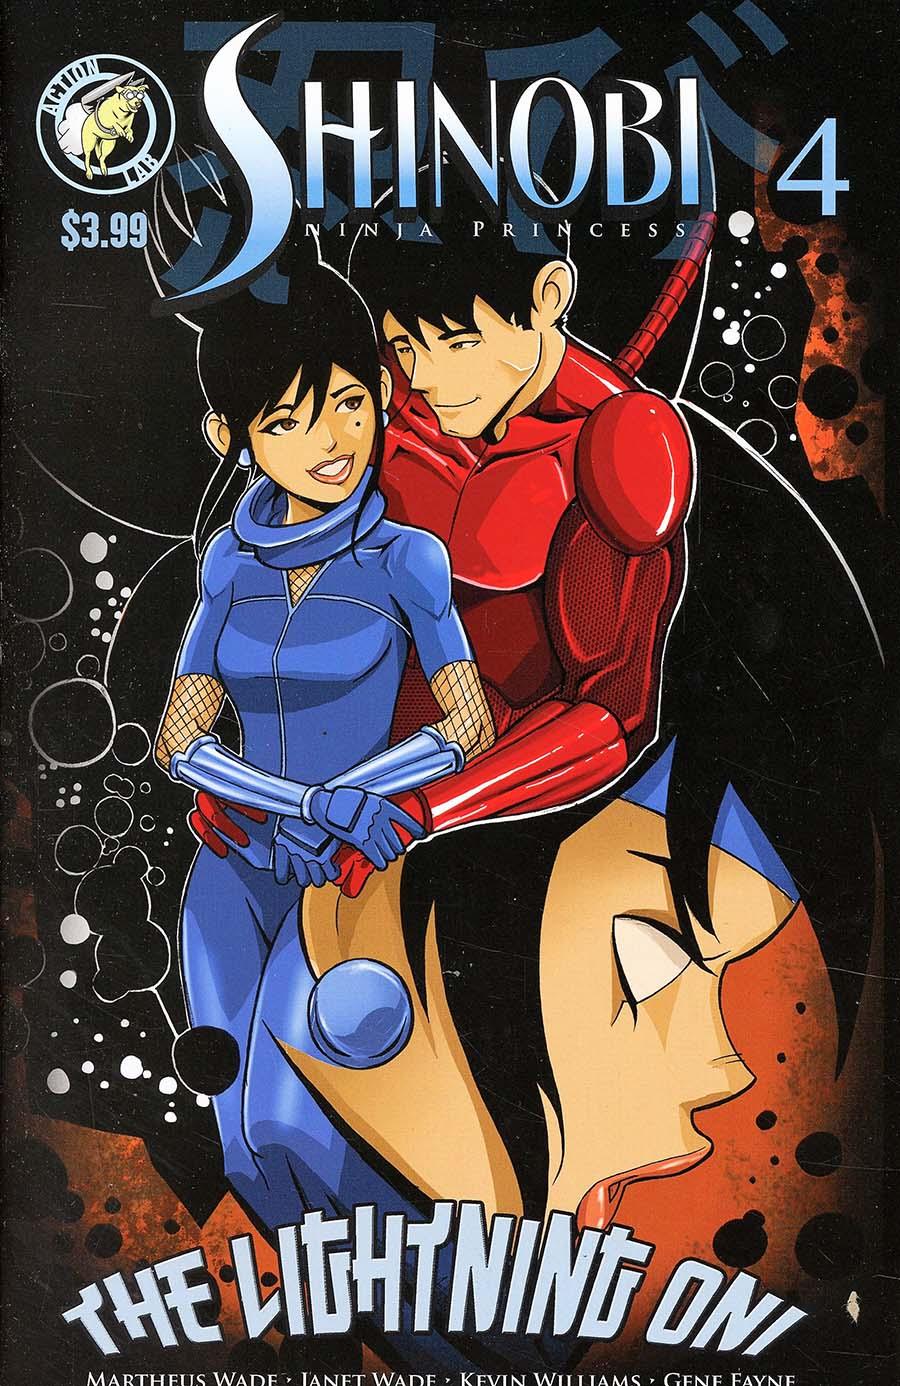 Shinobi Ninja Princess Lightning Oni Vol. 1 #4